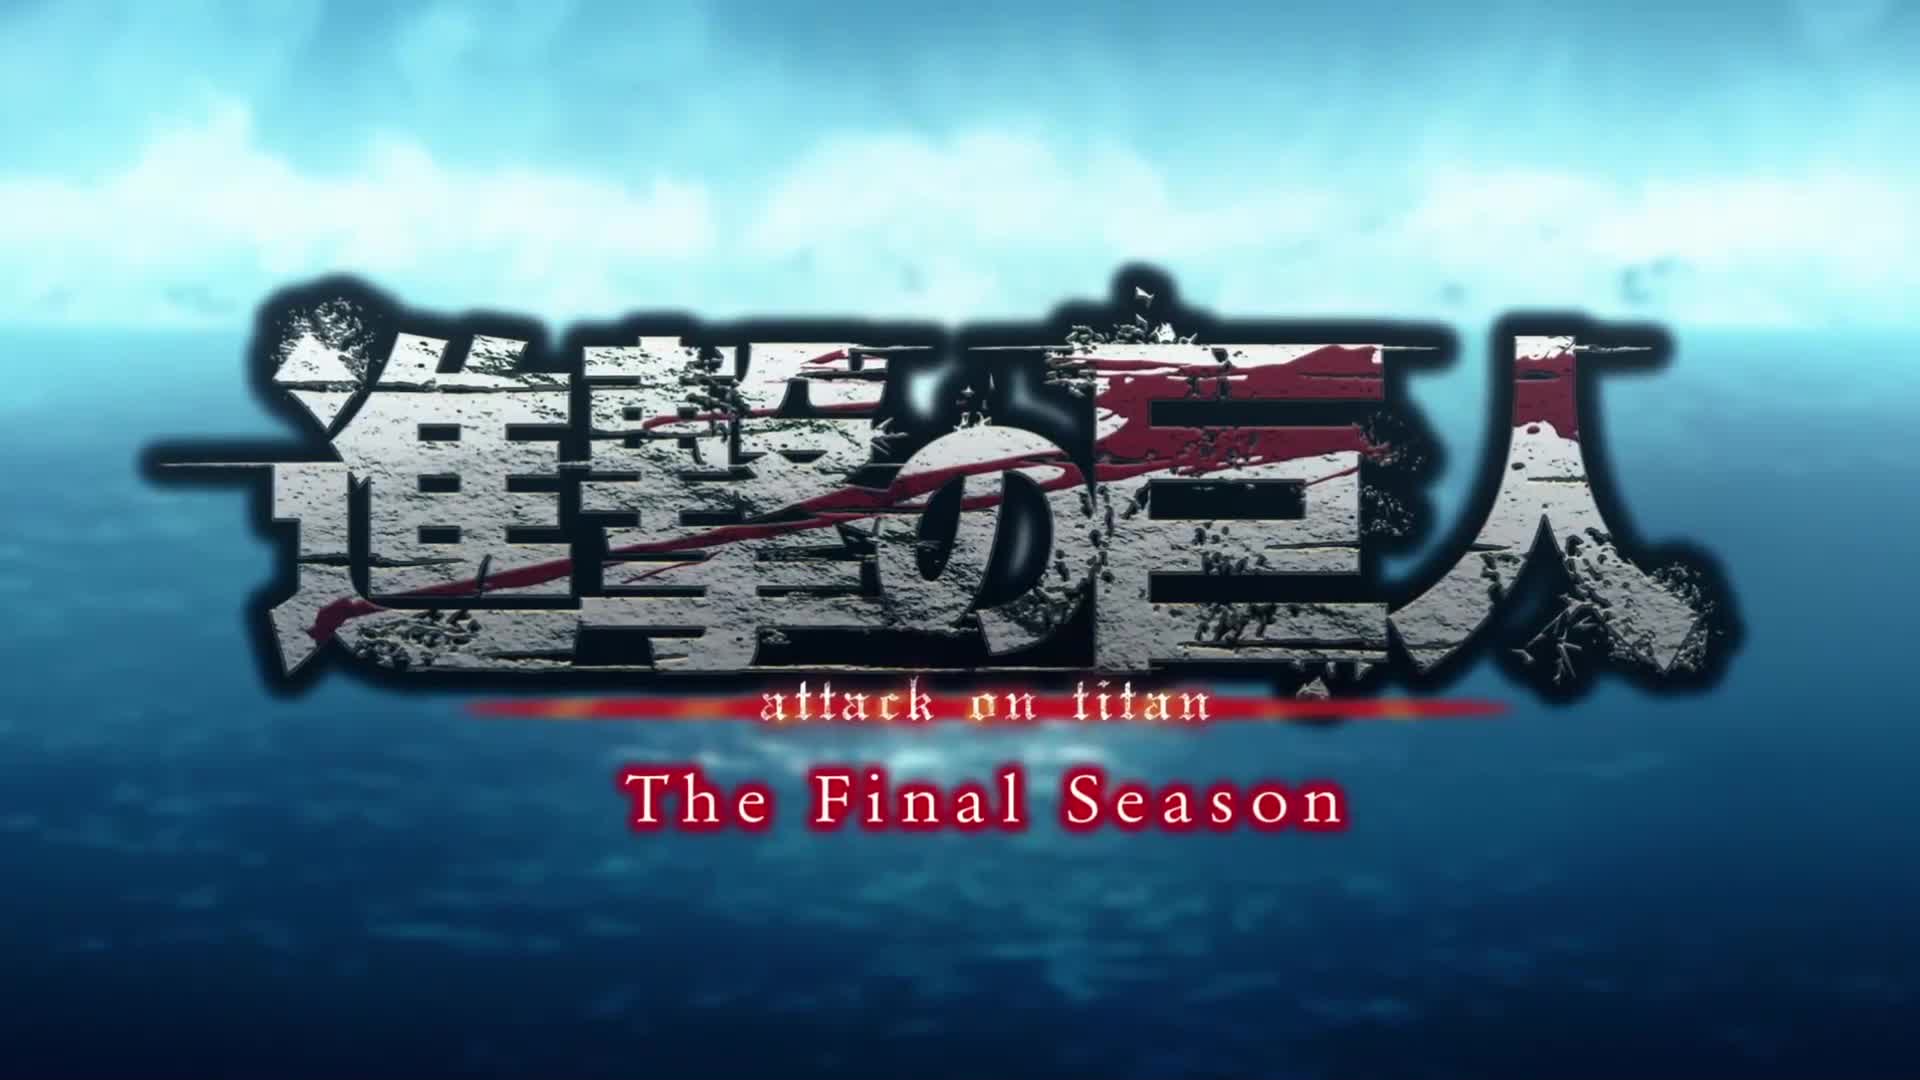 Shingeki no Kyojin: The Final Season celebra su episodio 24 con